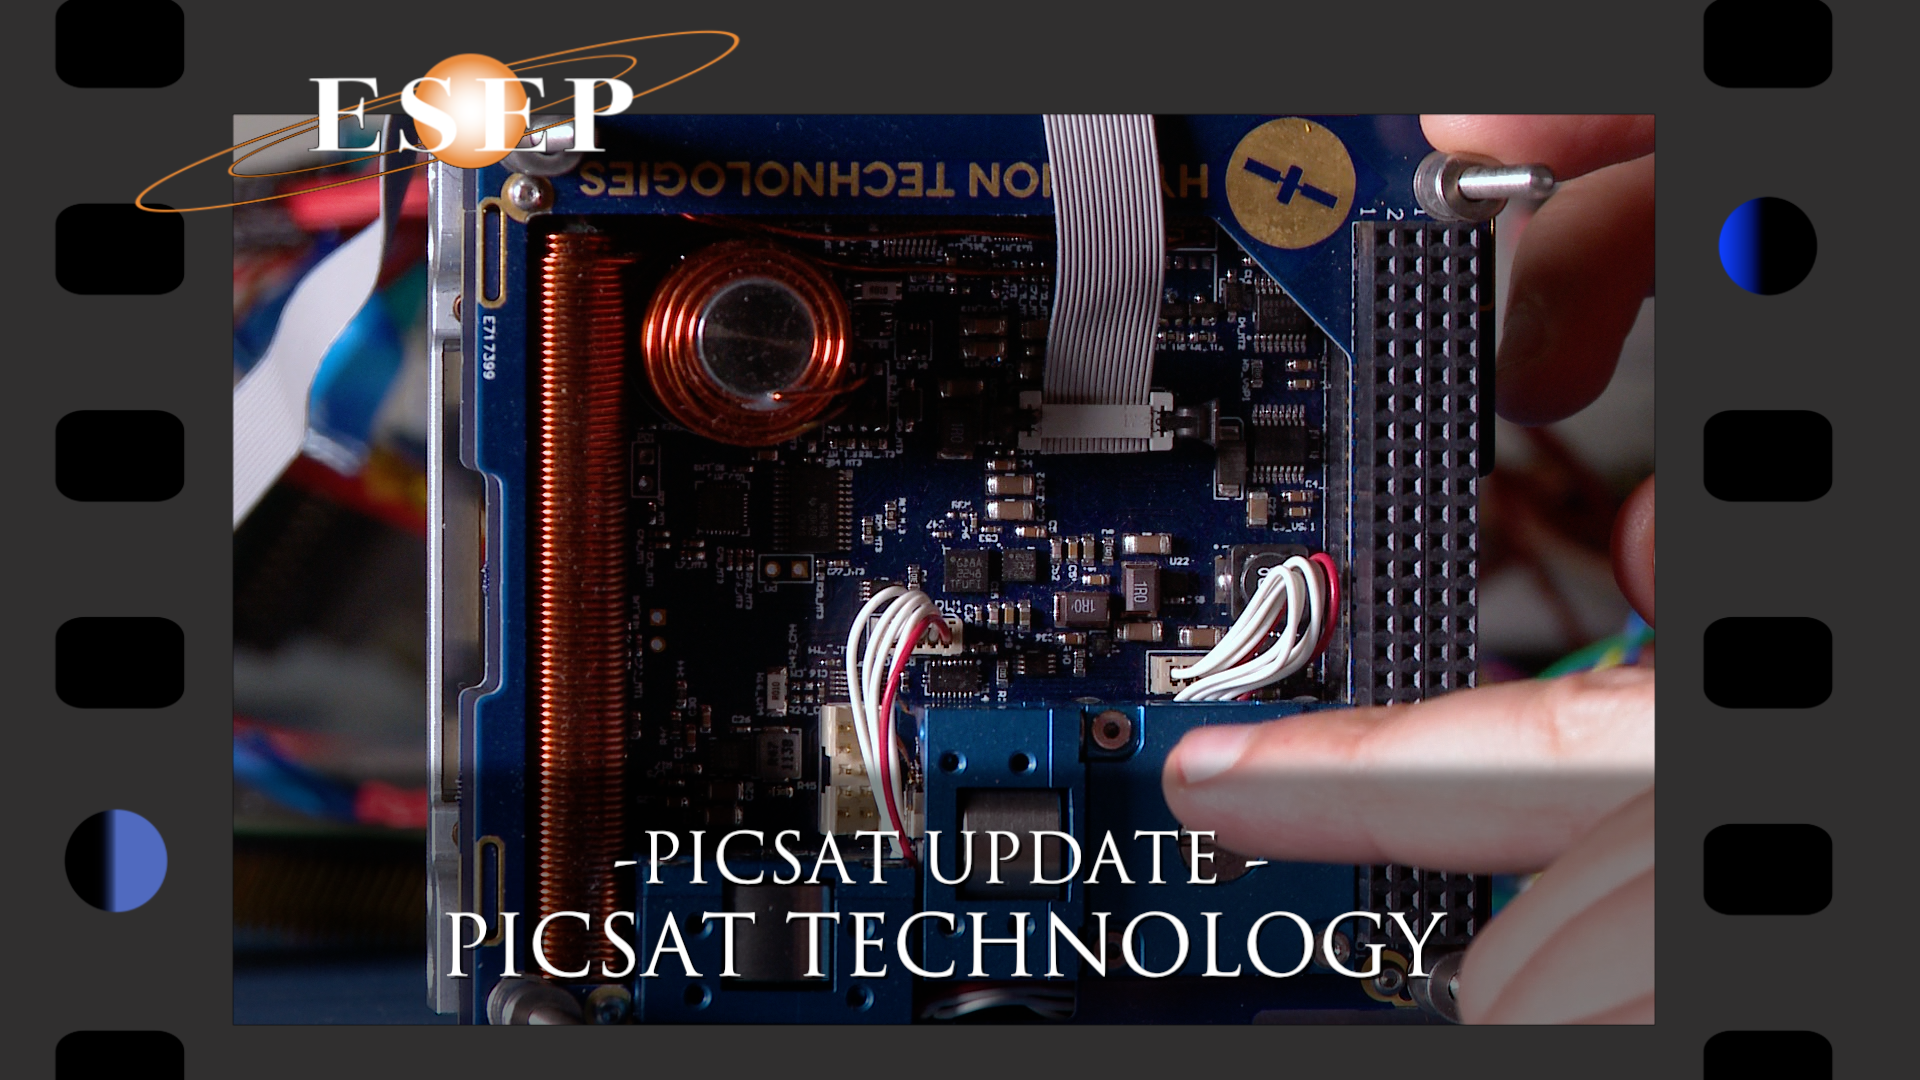 PICSAT update - 20 Octobre 2017: PICSAT Technology